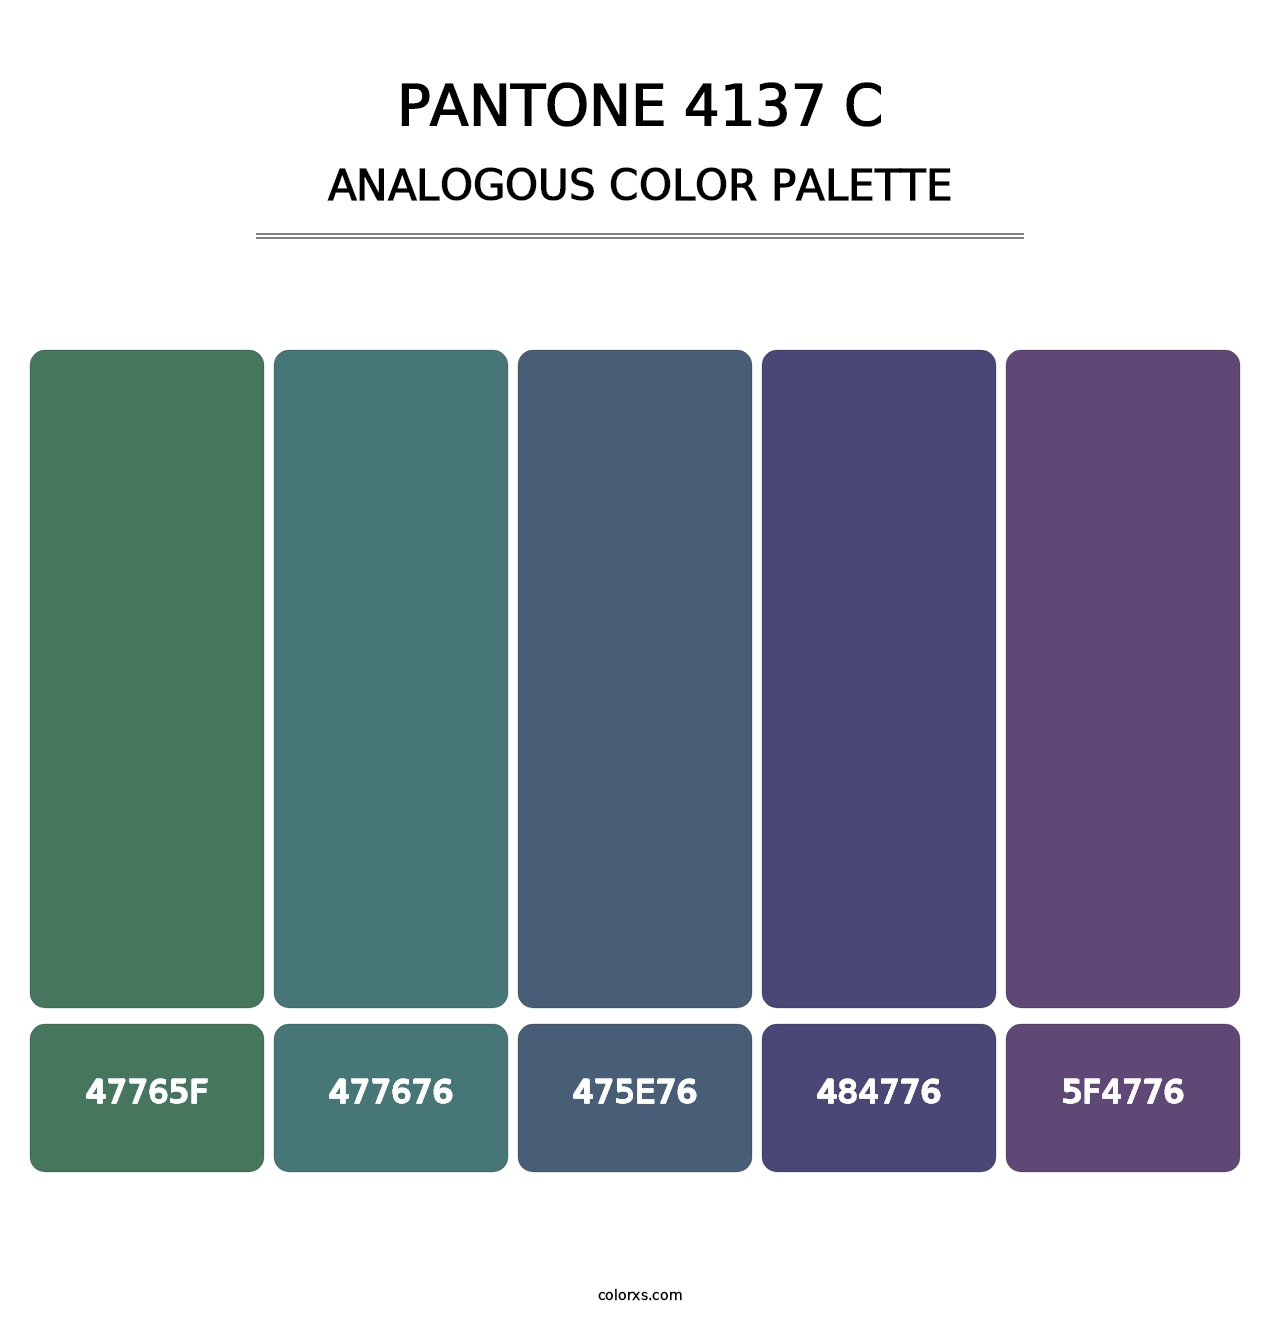 PANTONE 4137 C - Analogous Color Palette